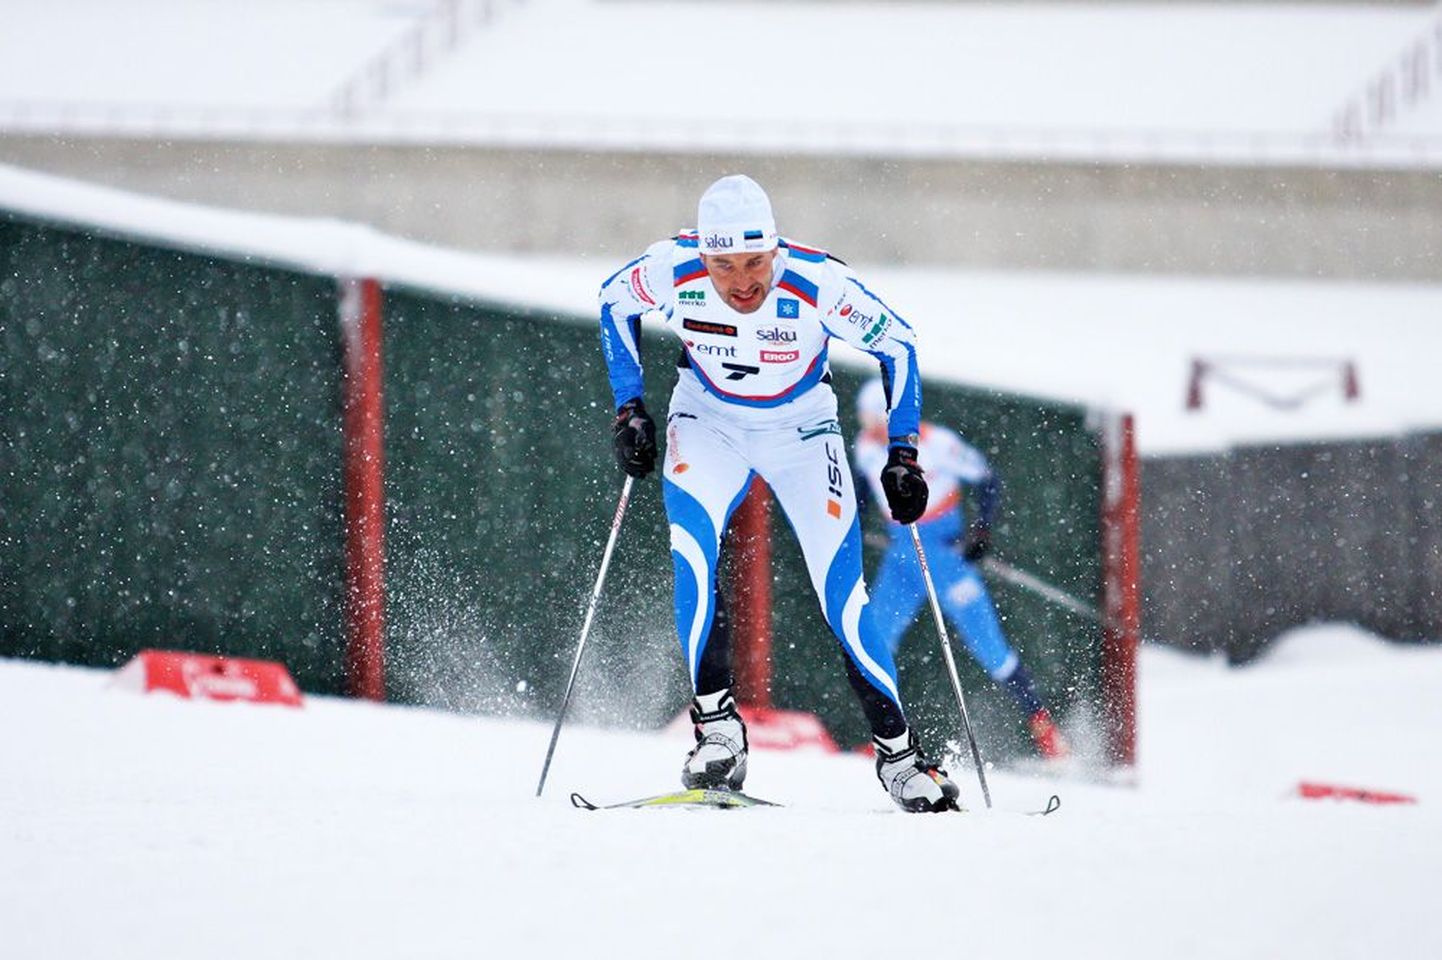 Kahekordne olümpiavõitja Andrus Veerpalu sai eile vabatehnikasprindis 11. koha.